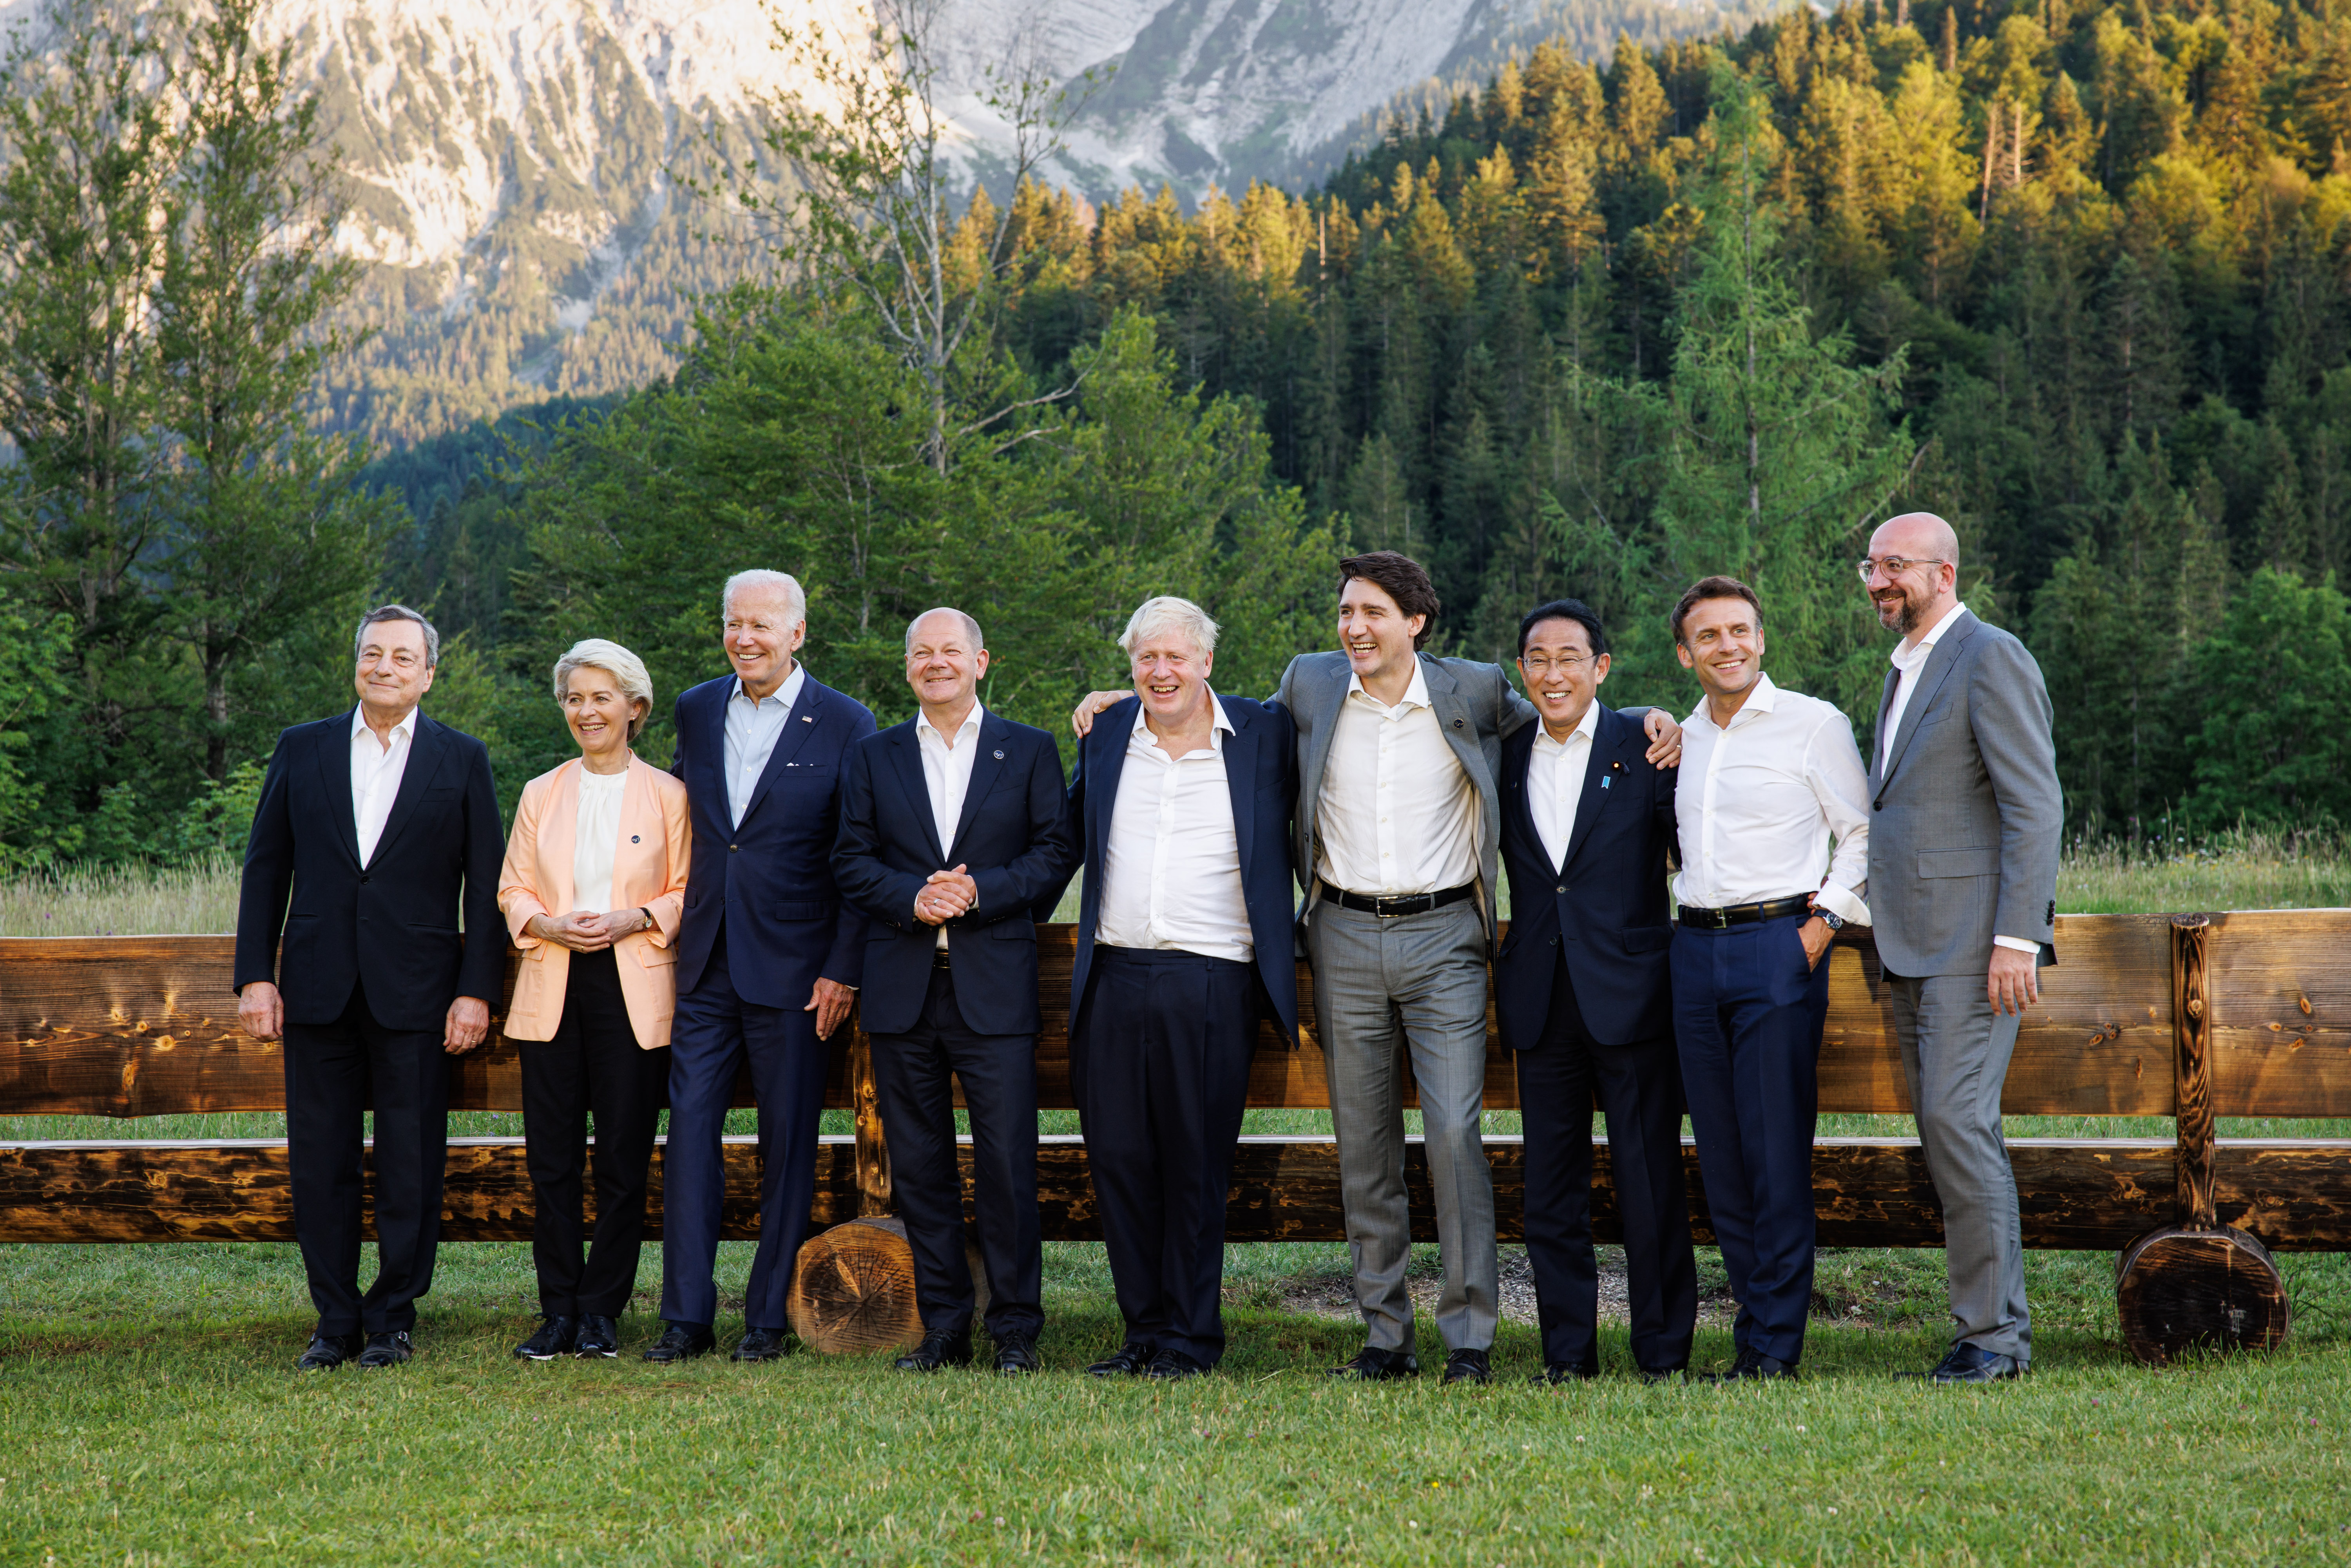 Gruppenfoto der G7 Teilnehmer vor Gebirge